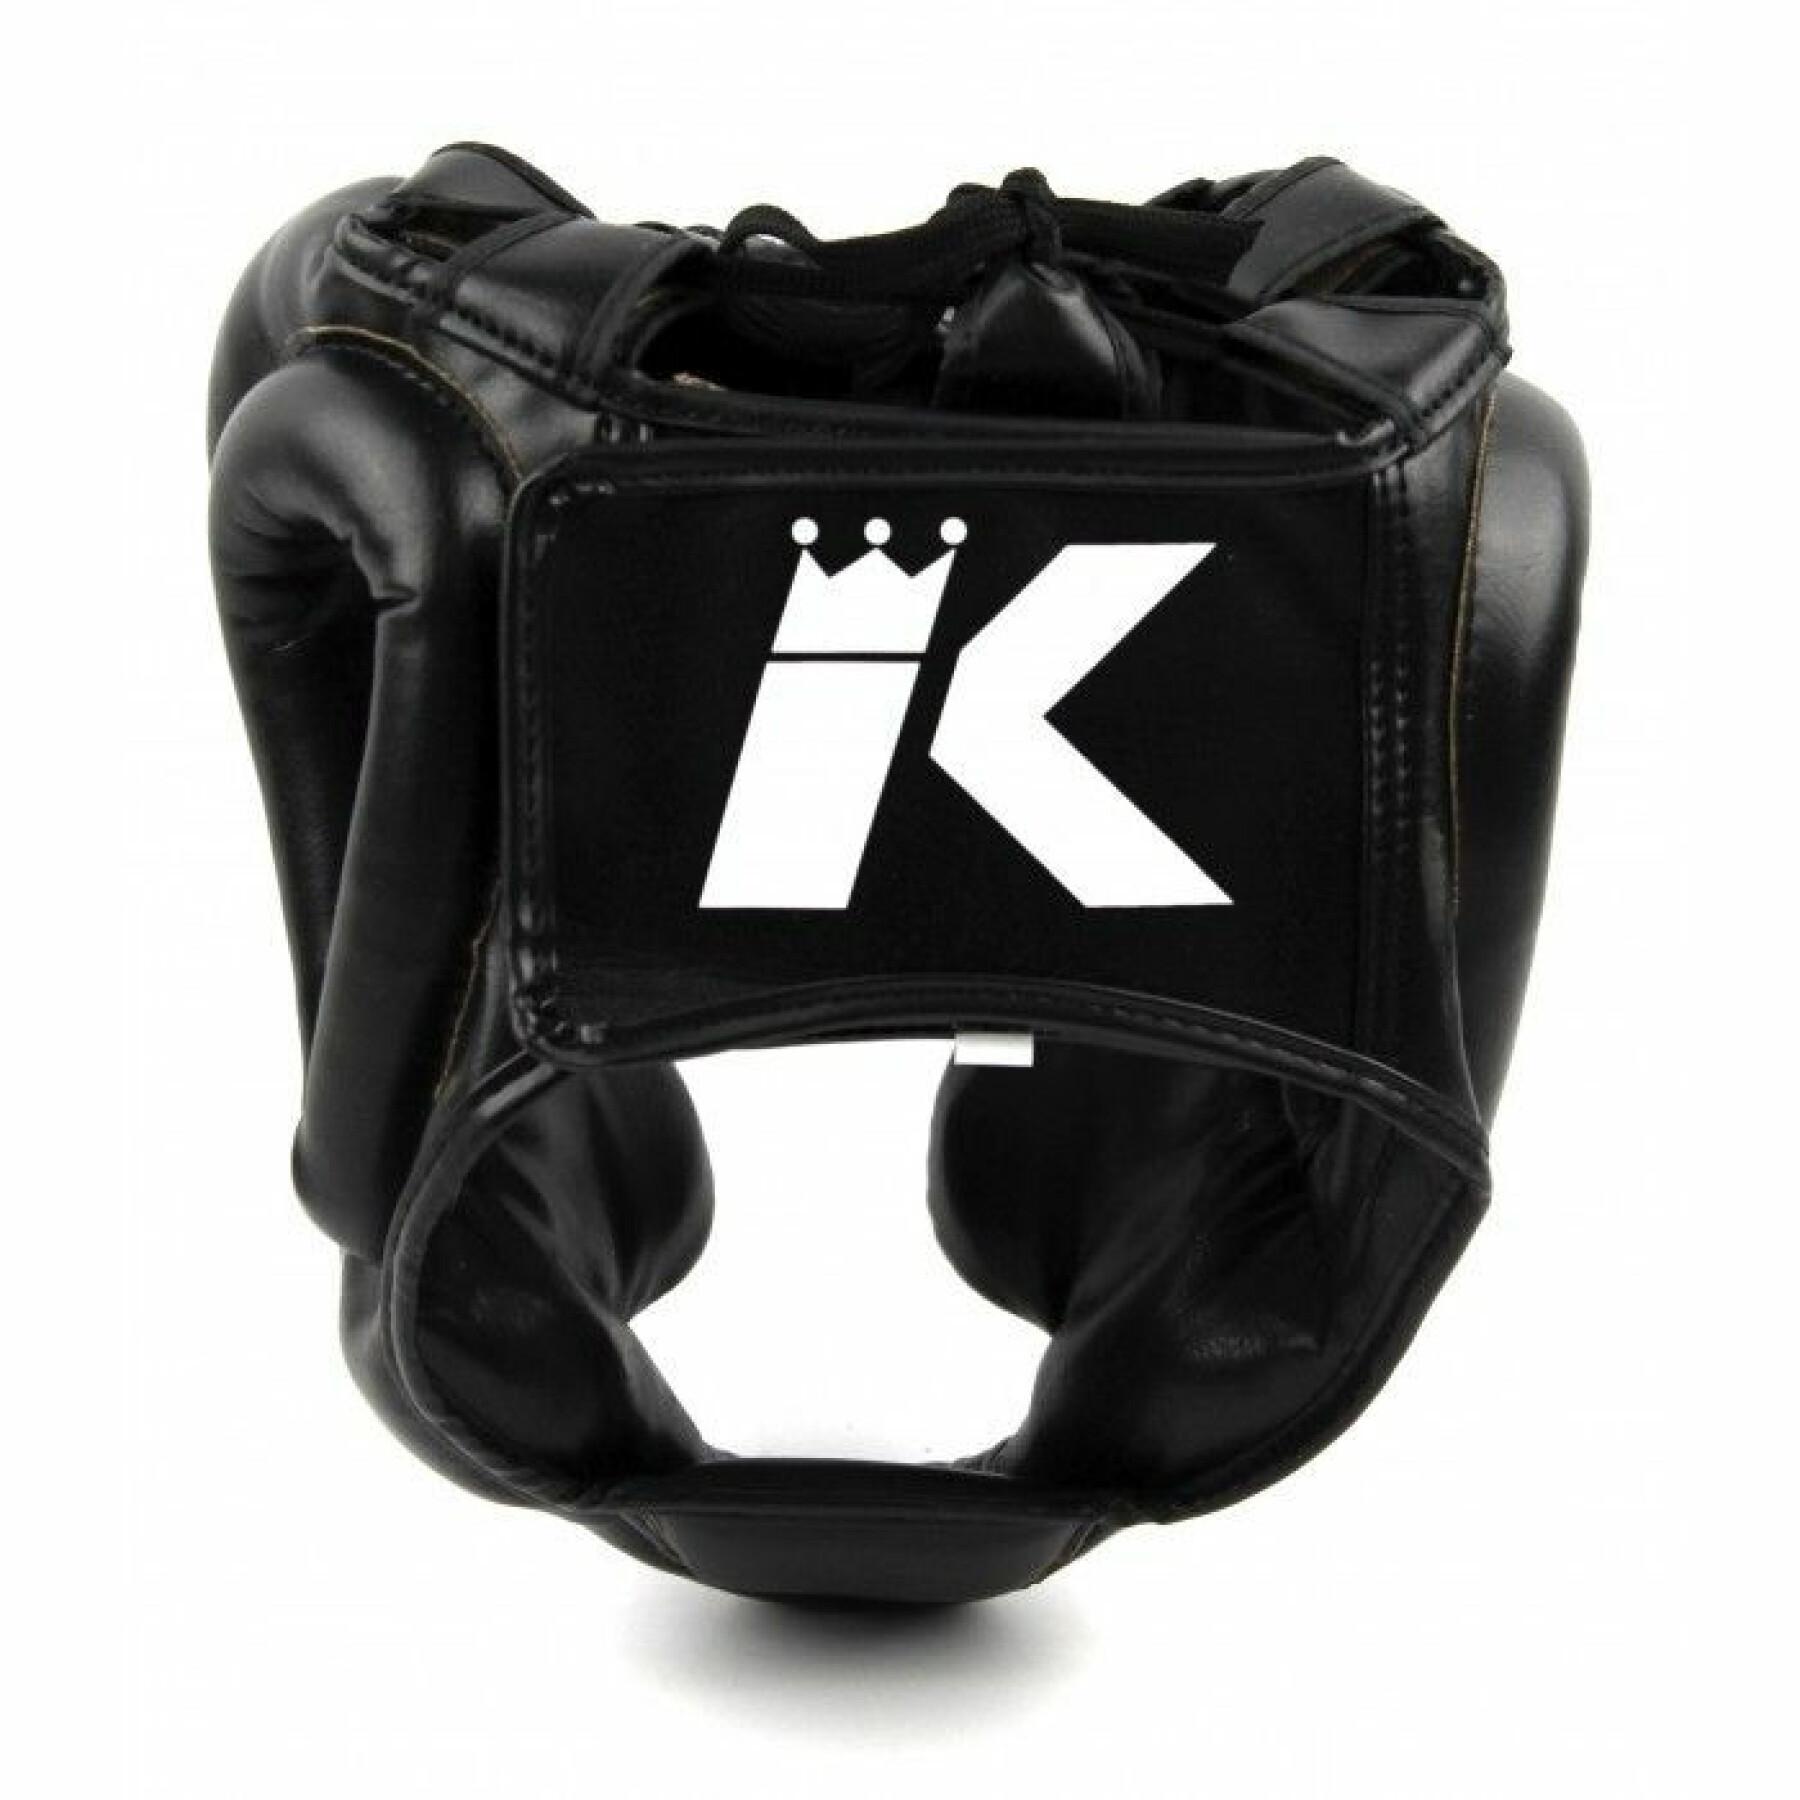 Casque boxe King Pro Boxing Kpb/Hg